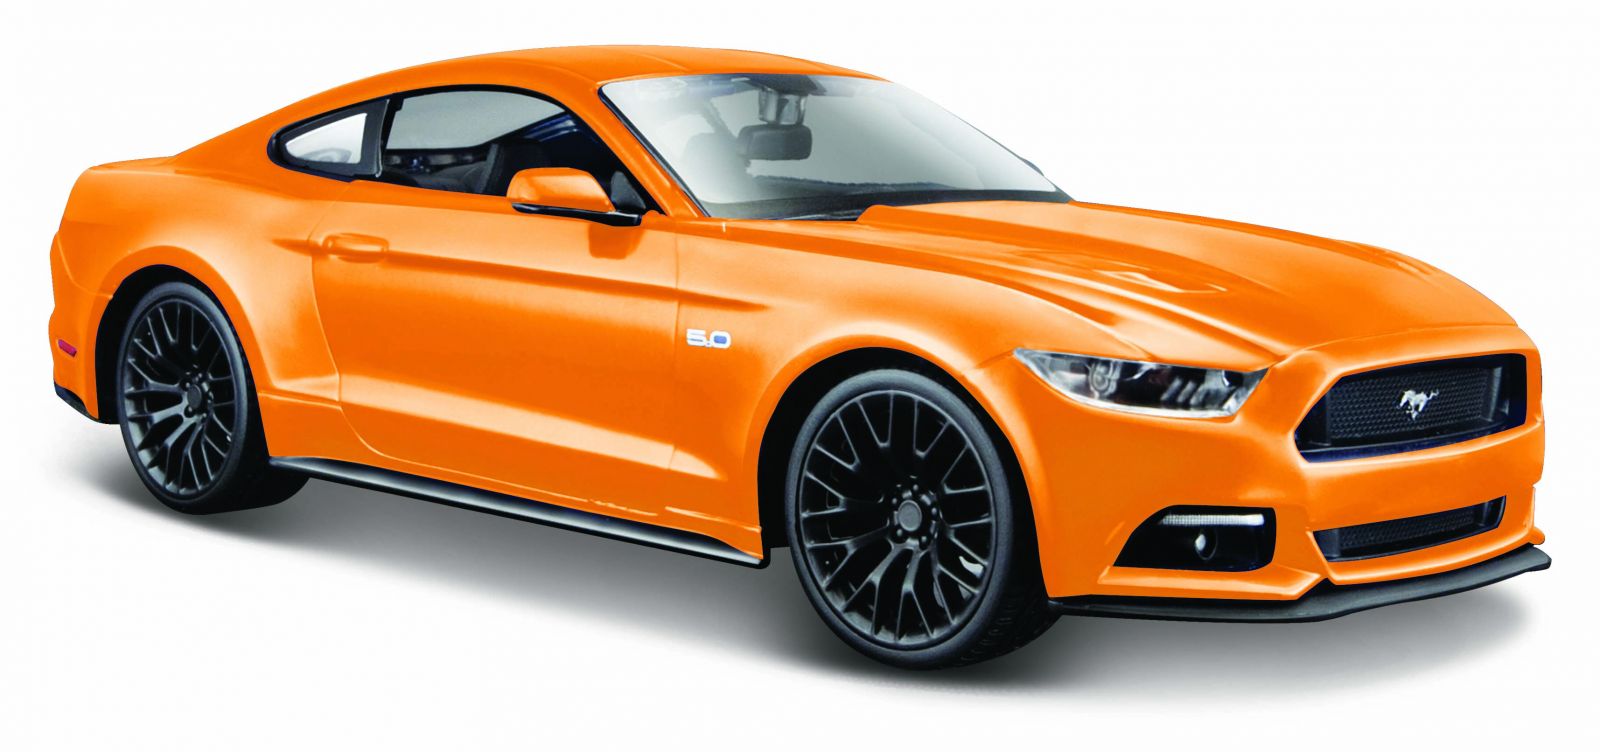 Maisto 1:24 Ford Mustang GT 2015 - oranžová barva